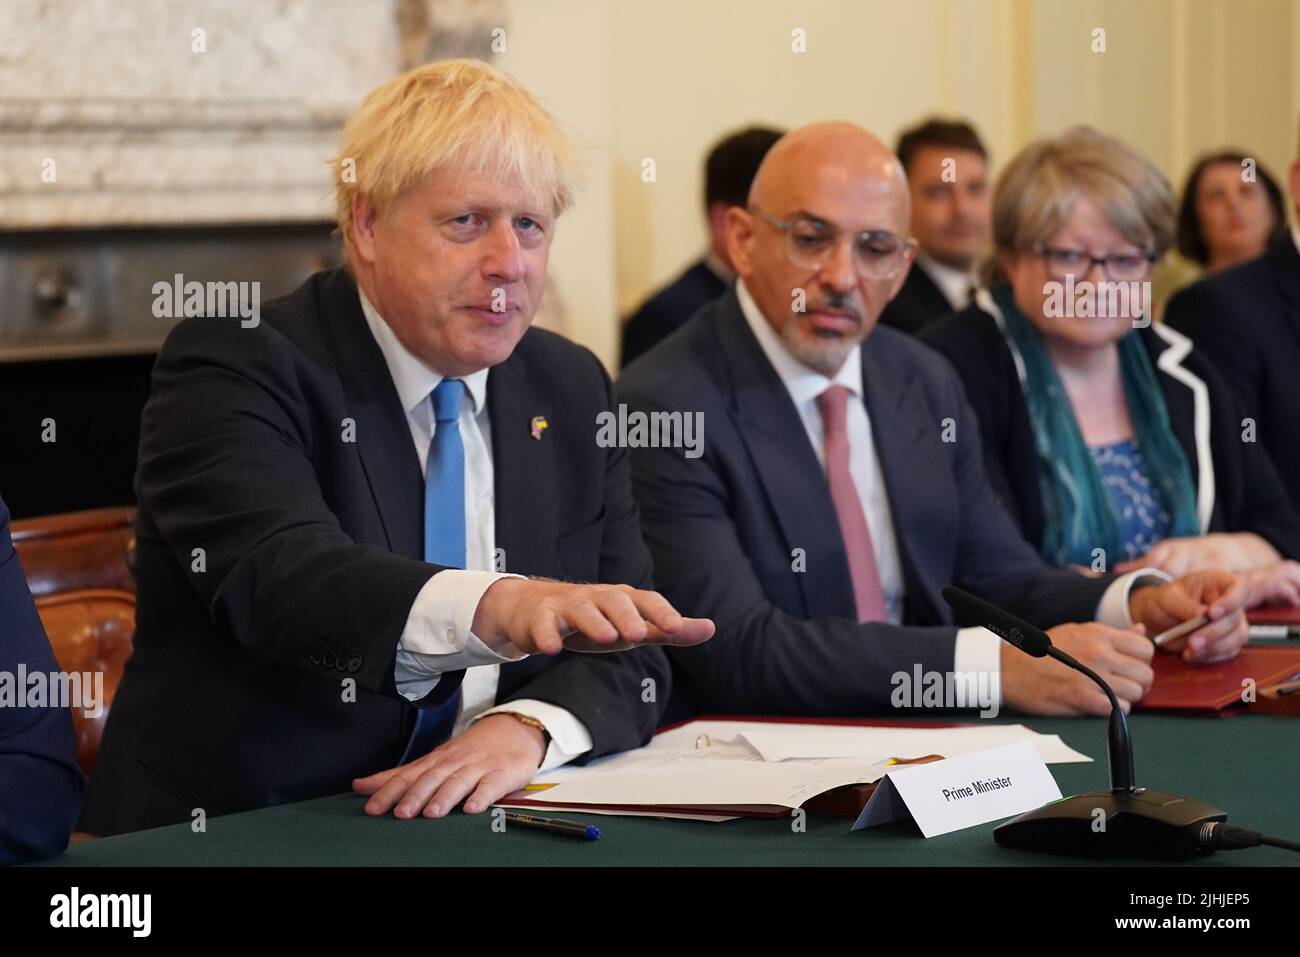 (Von links nach rechts) Premierminister Boris Johnson, Schatzkanzler Nadhim Zahawi und Arbeits- und Rentenministerin Therese Coffey während einer Kabinettssitzung in der Downing Street 10, London. Bilddatum: Dienstag, 19. Juli 2022. Stockfoto